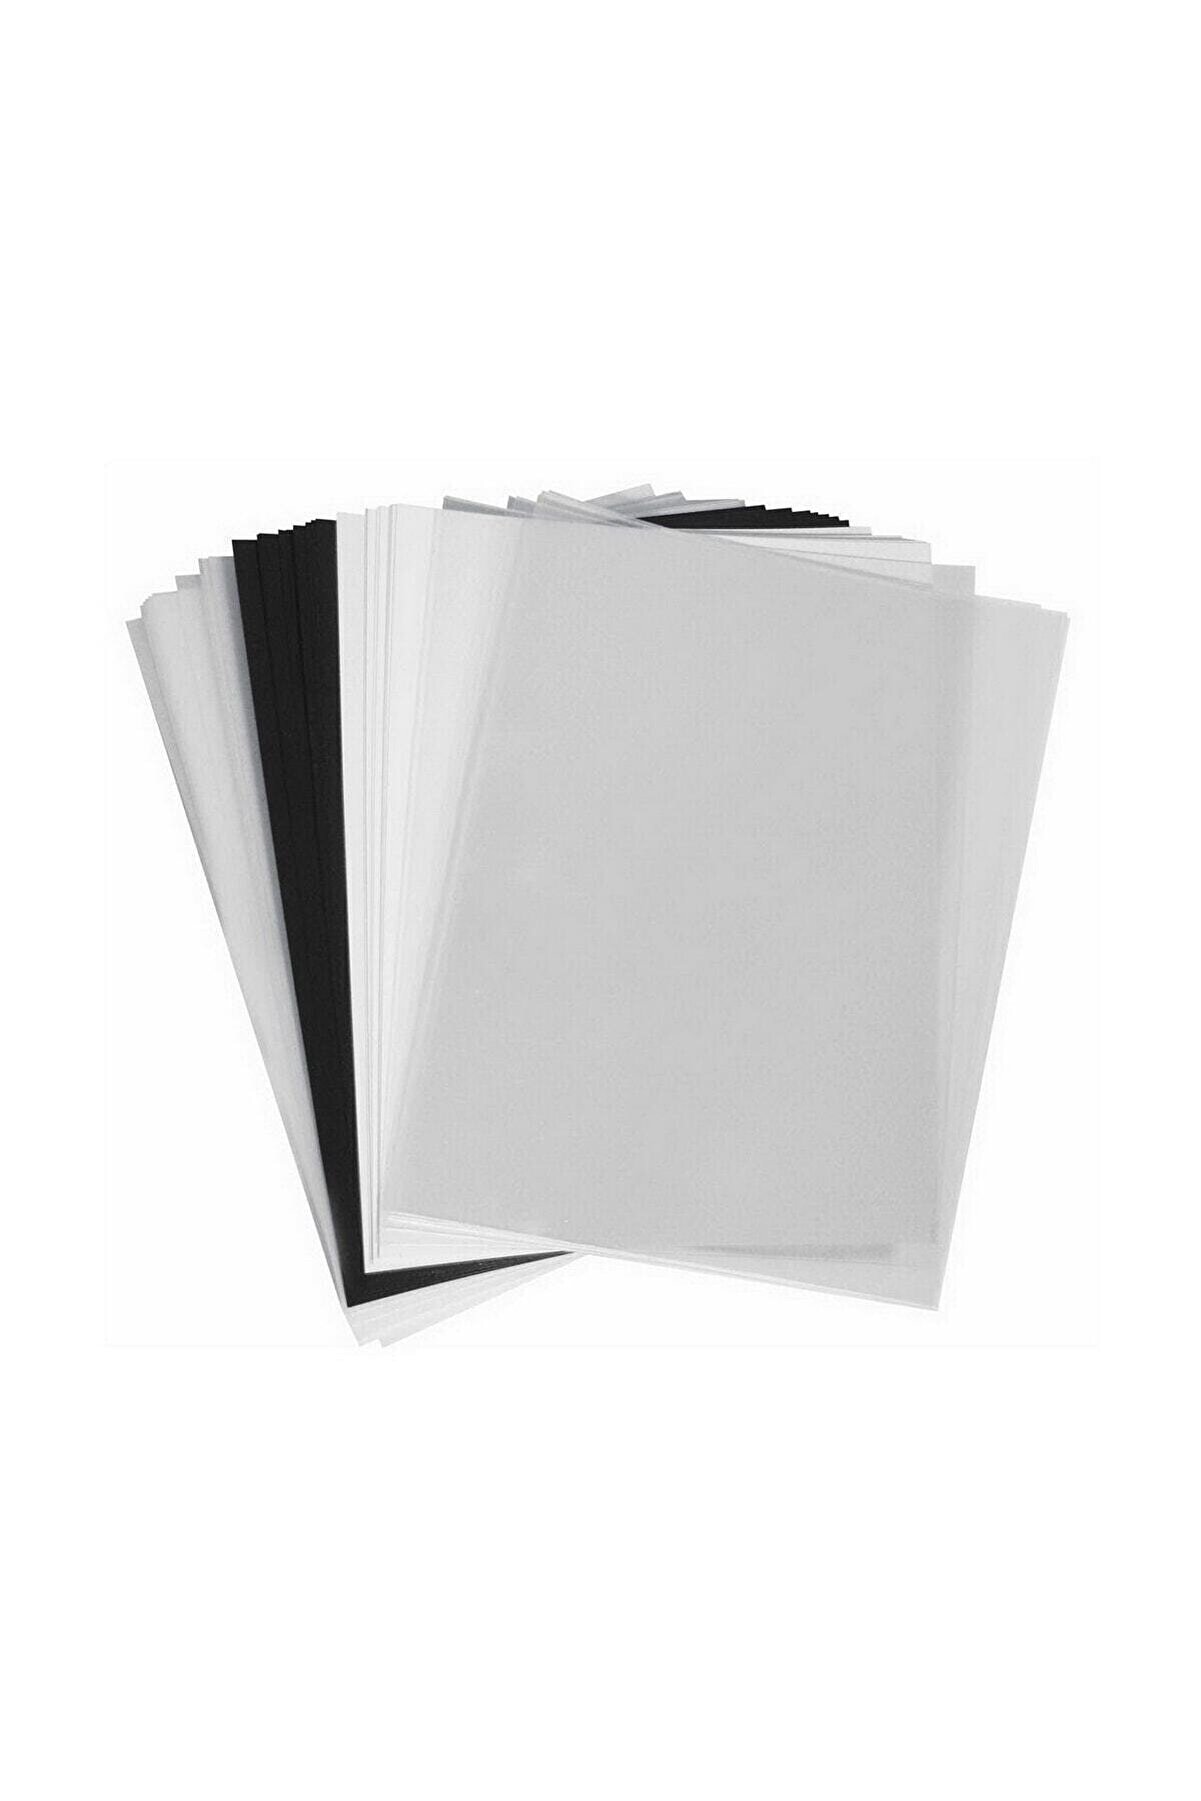 Edico Küçülen Kağıt Buzlu 5441002 20x26 Cm / 2 Tabaka 3 Adet